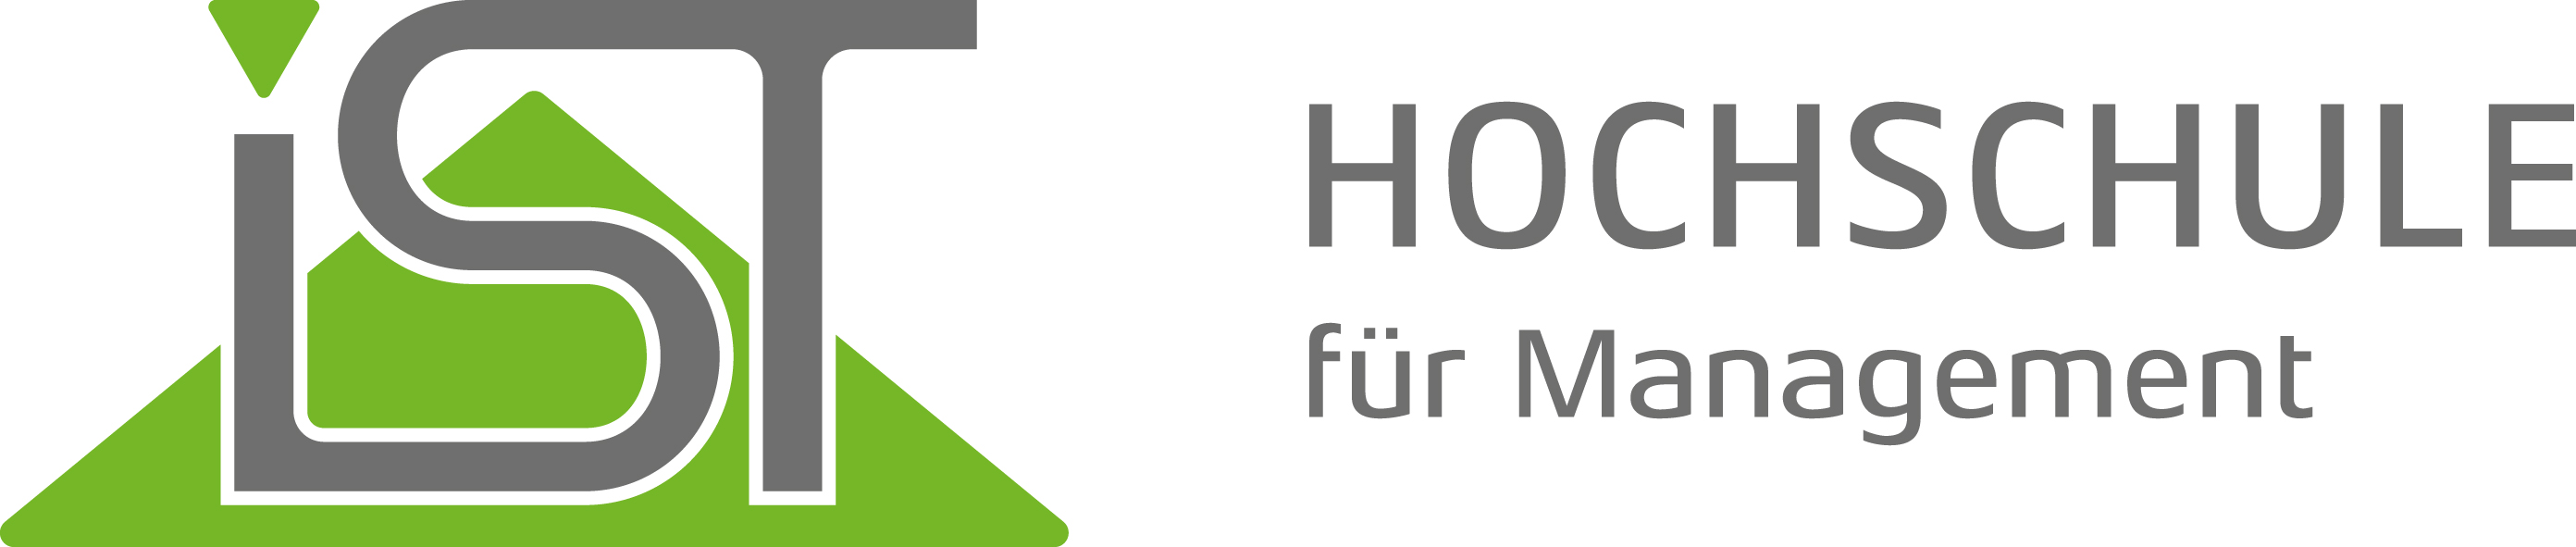 Logo_IST-Hochschule_ohneZusatz.jpg